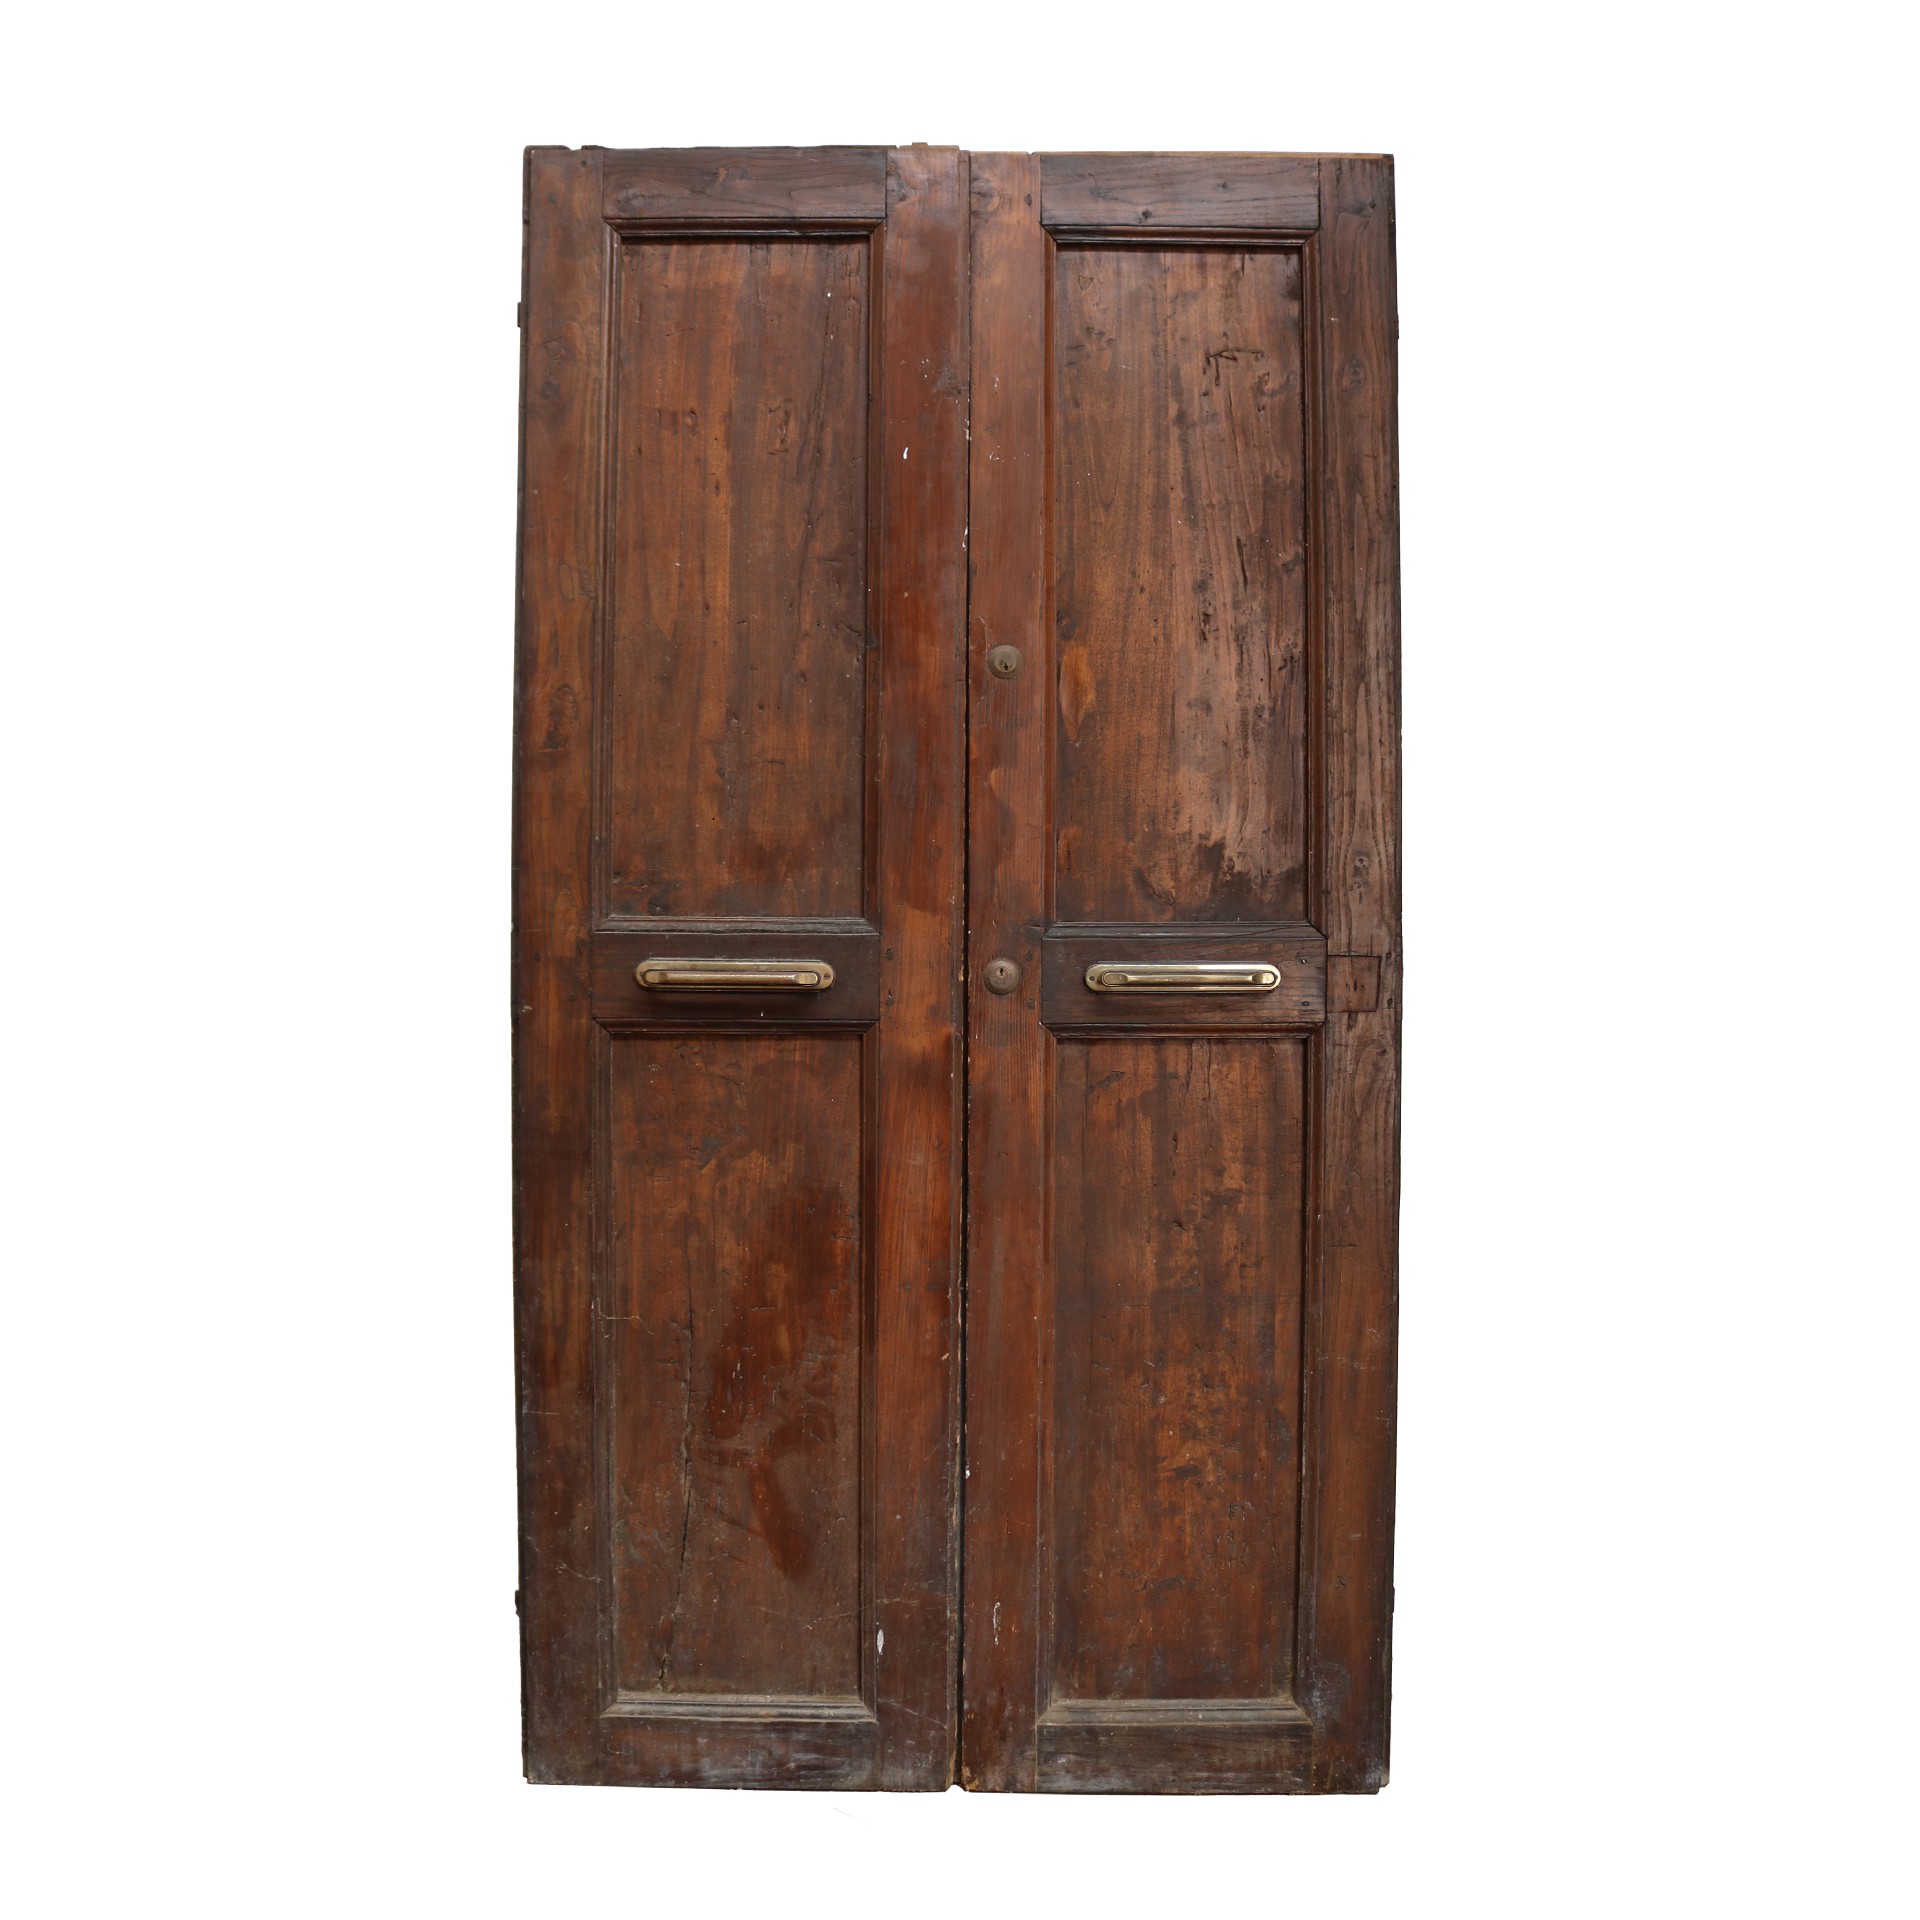 Antica porta in legno. - Porte in Legno - Porte Antiche - Prodotti - Antichità Fiorillo